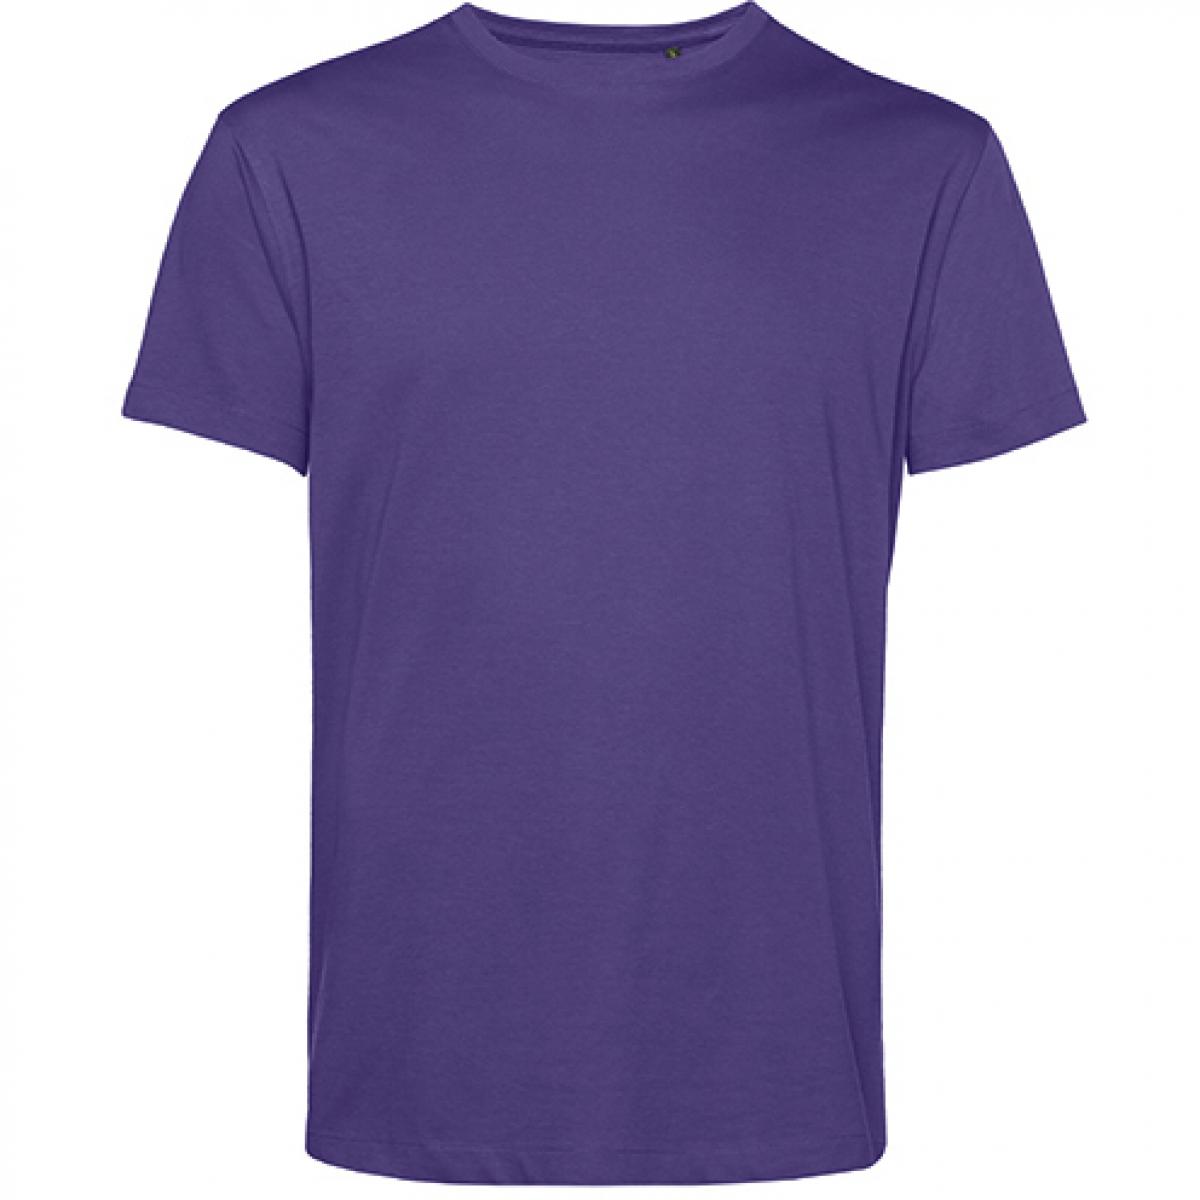 Hersteller: B&C Herstellernummer: TU01B Artikelbezeichnung: #Organic E150 T-Shirt - 100 % sanforisierte Bio-Baumwolle Farbe: Radiant Purple